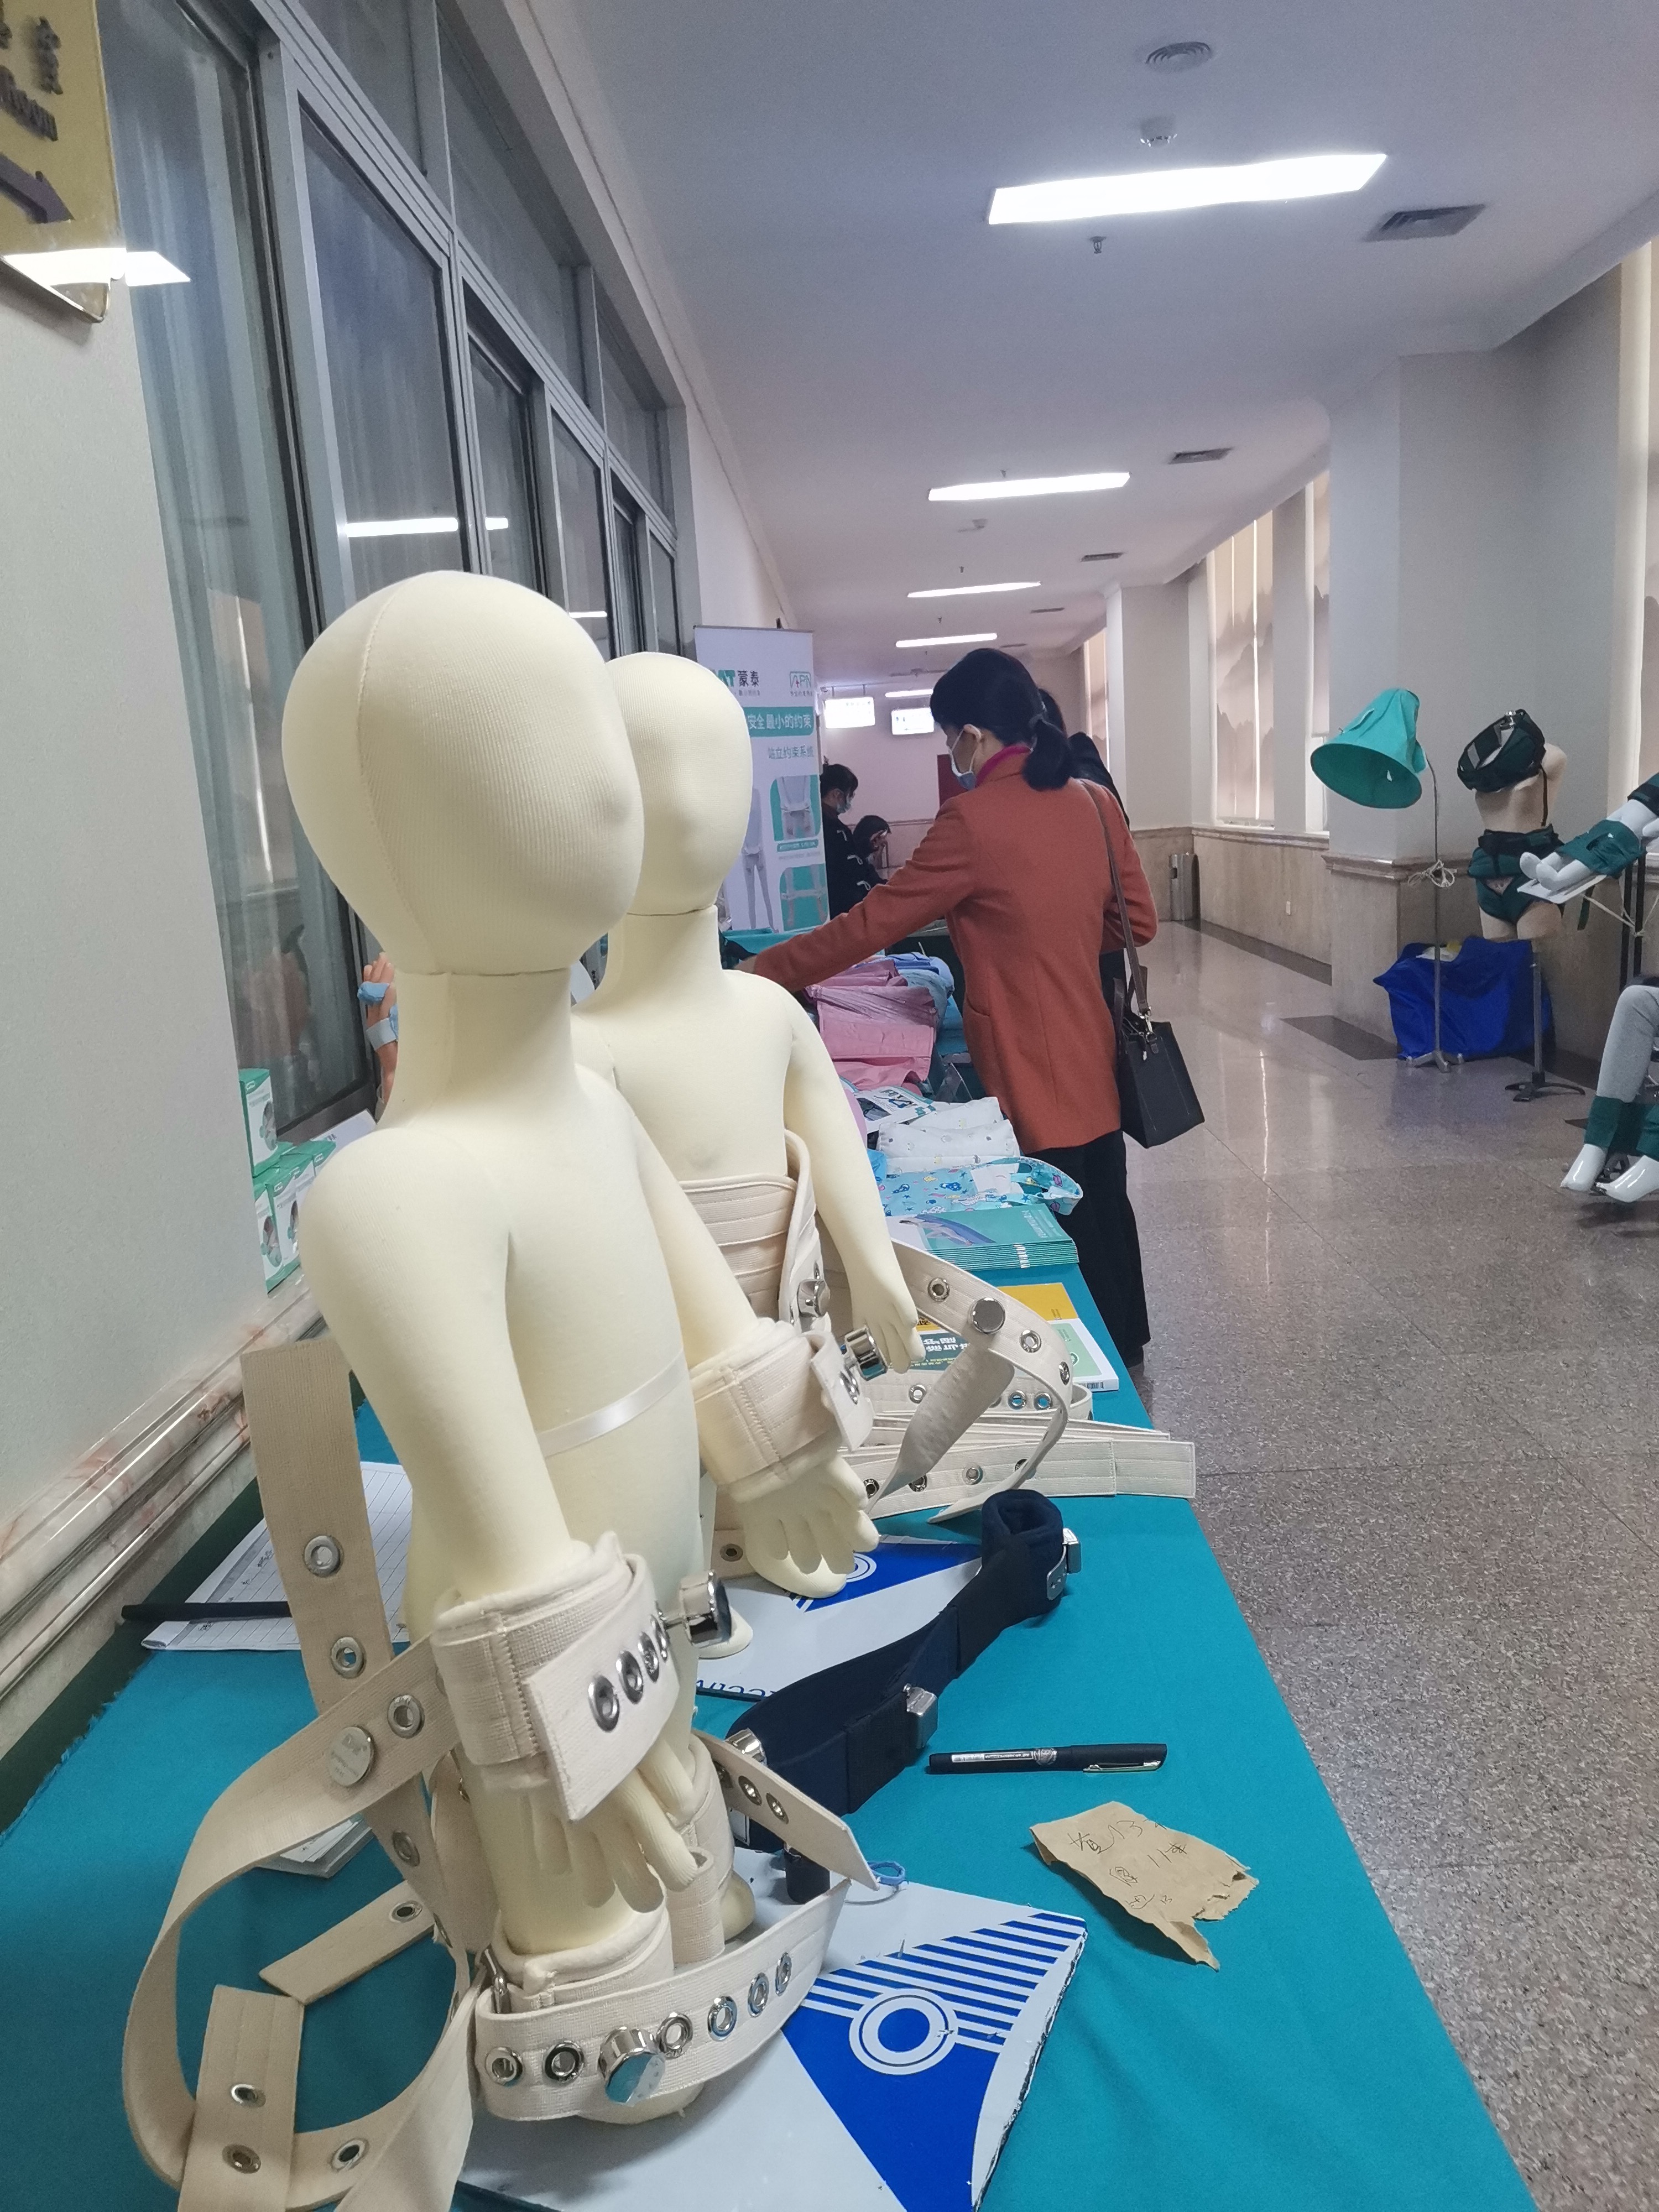 蒙泰磁控約束帶系統在廣東實踐護理大會上的精彩呈現